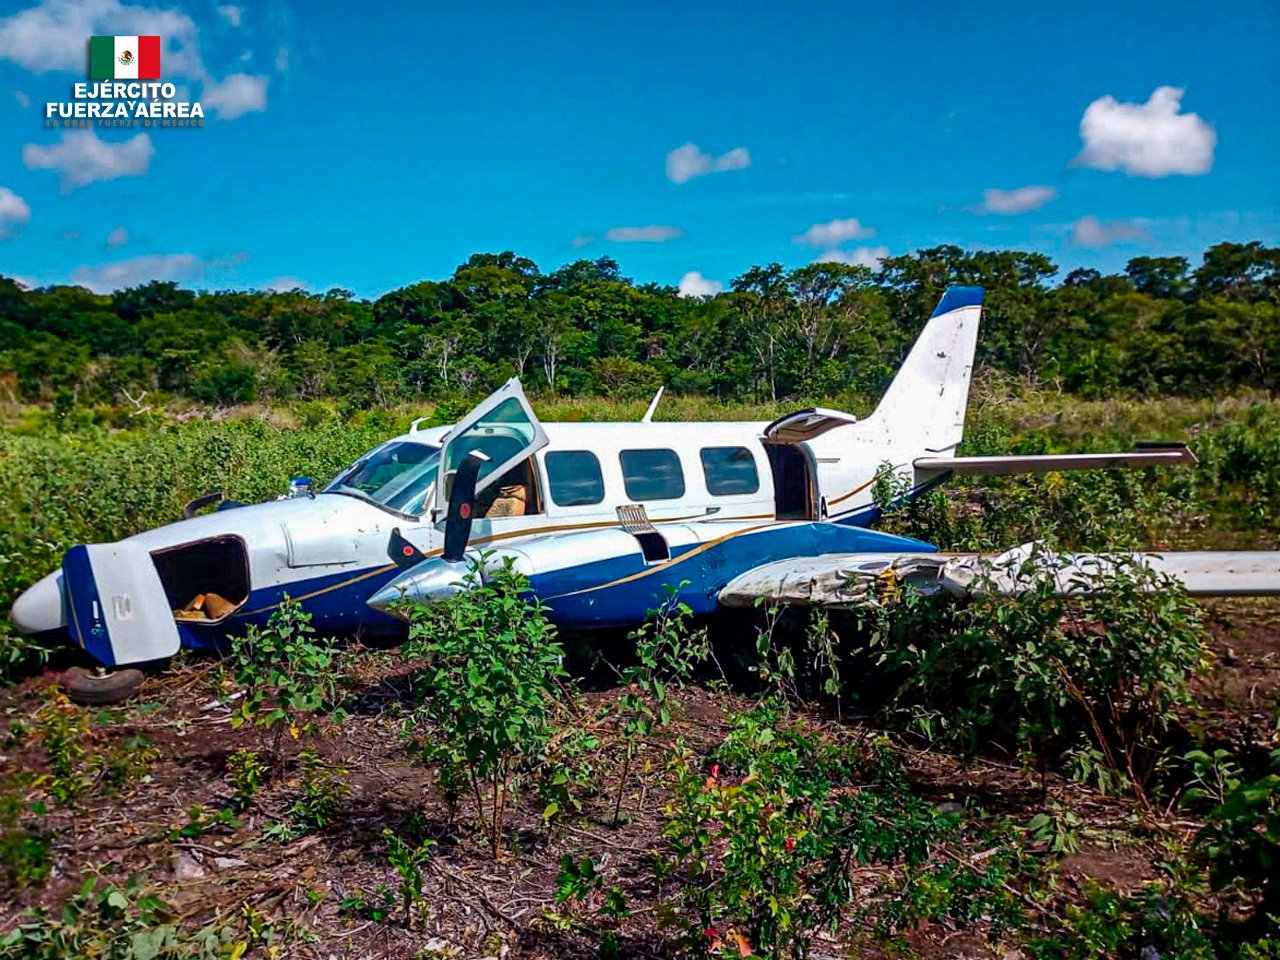 Ejército y Fuerza Aérea Mexicanos  aseguraron aeronave y posible cocaína en Campeche.